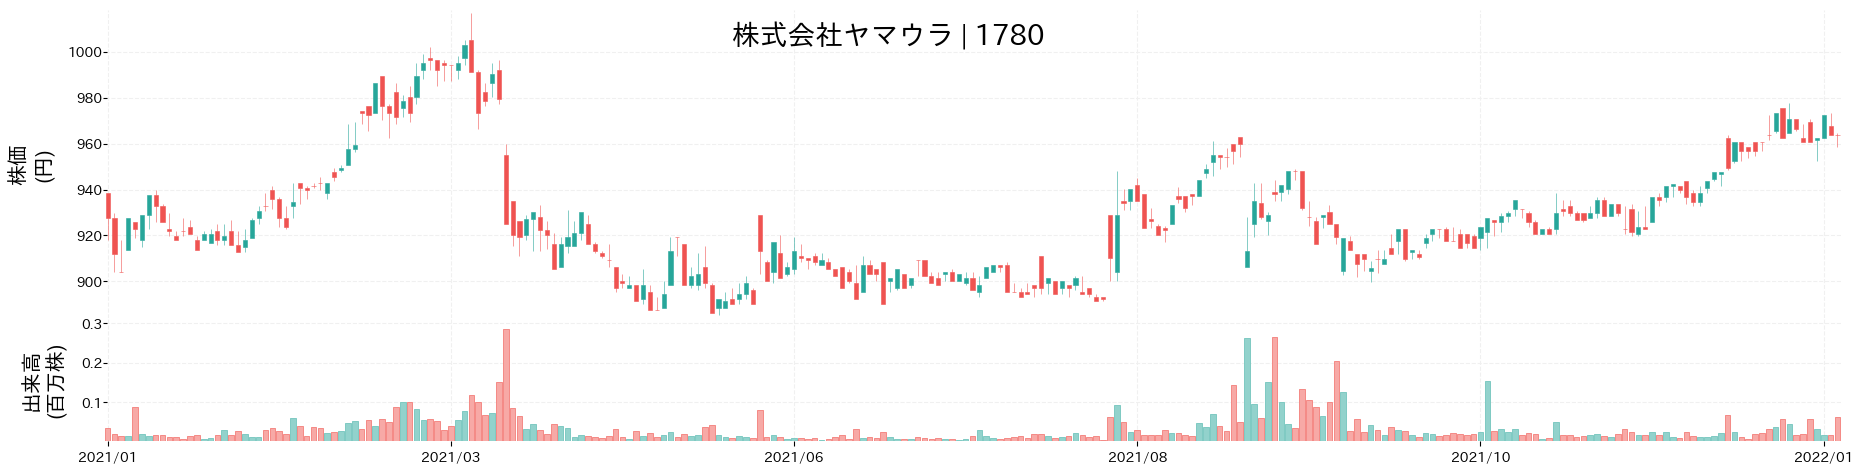 ヤマウラの株価推移(2021)